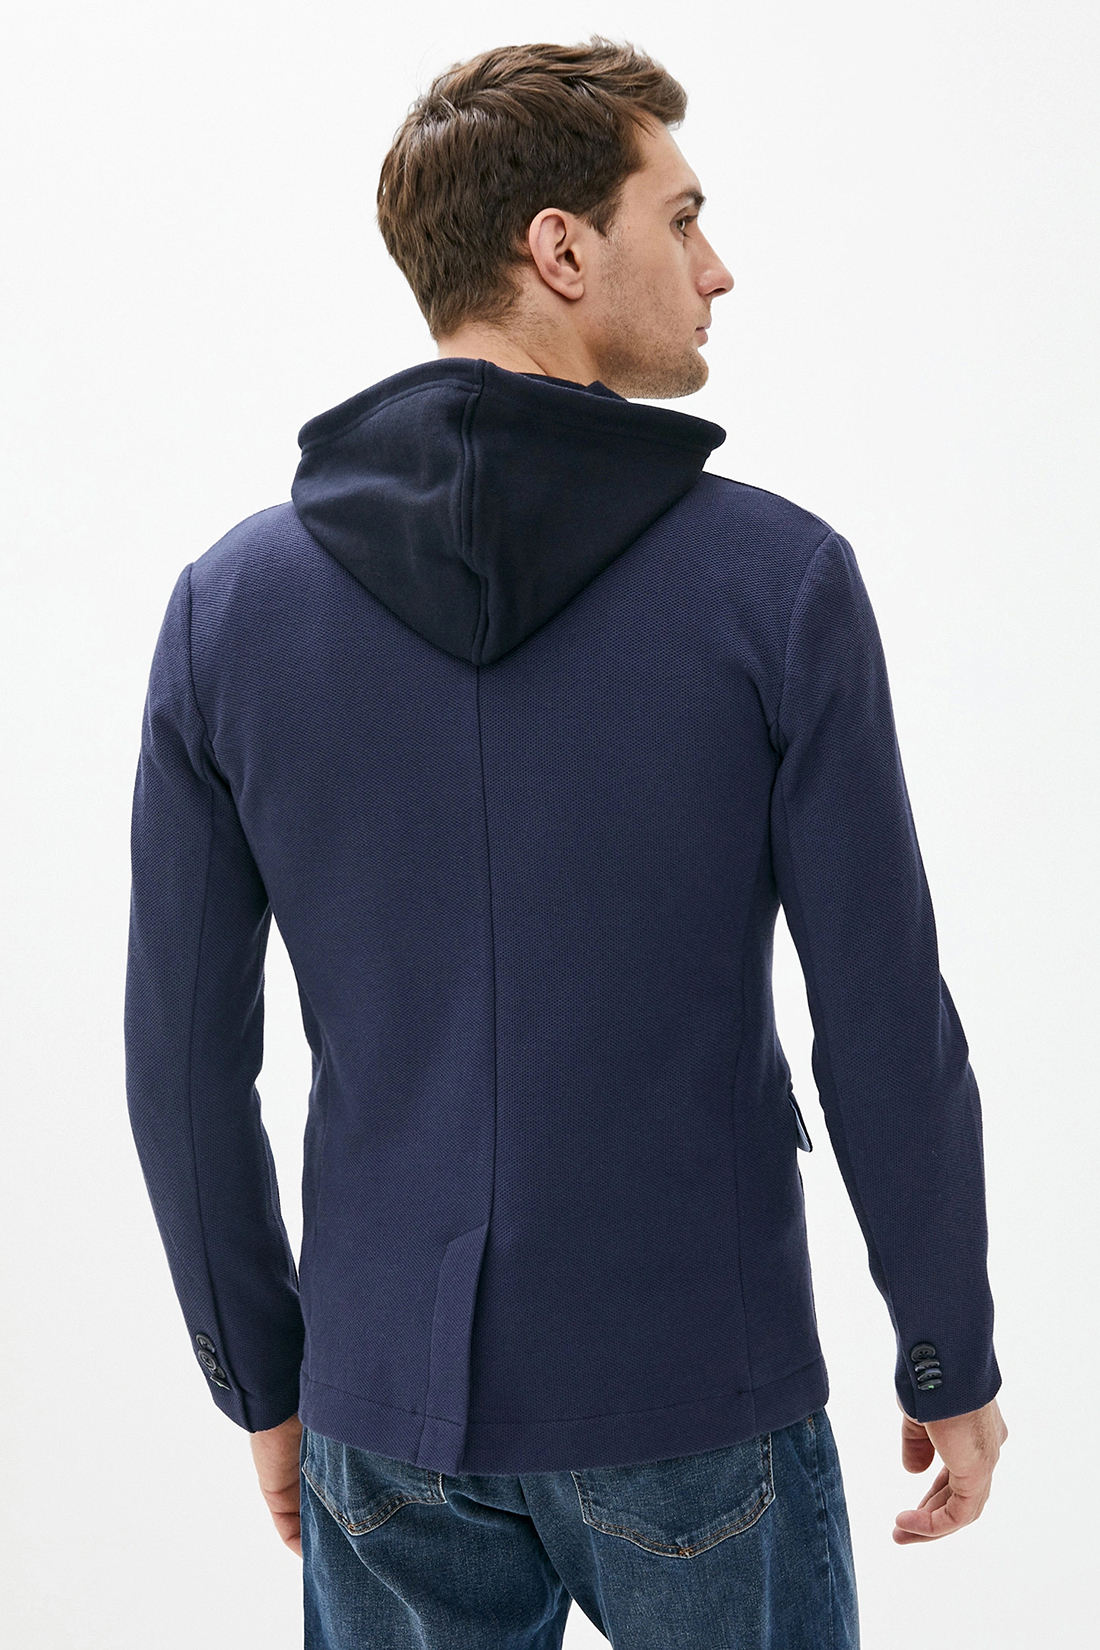 Пиджак с капюшоном (арт. baon B620005), размер XL, цвет синий Пиджак с капюшоном (арт. baon B620005) - фото 2